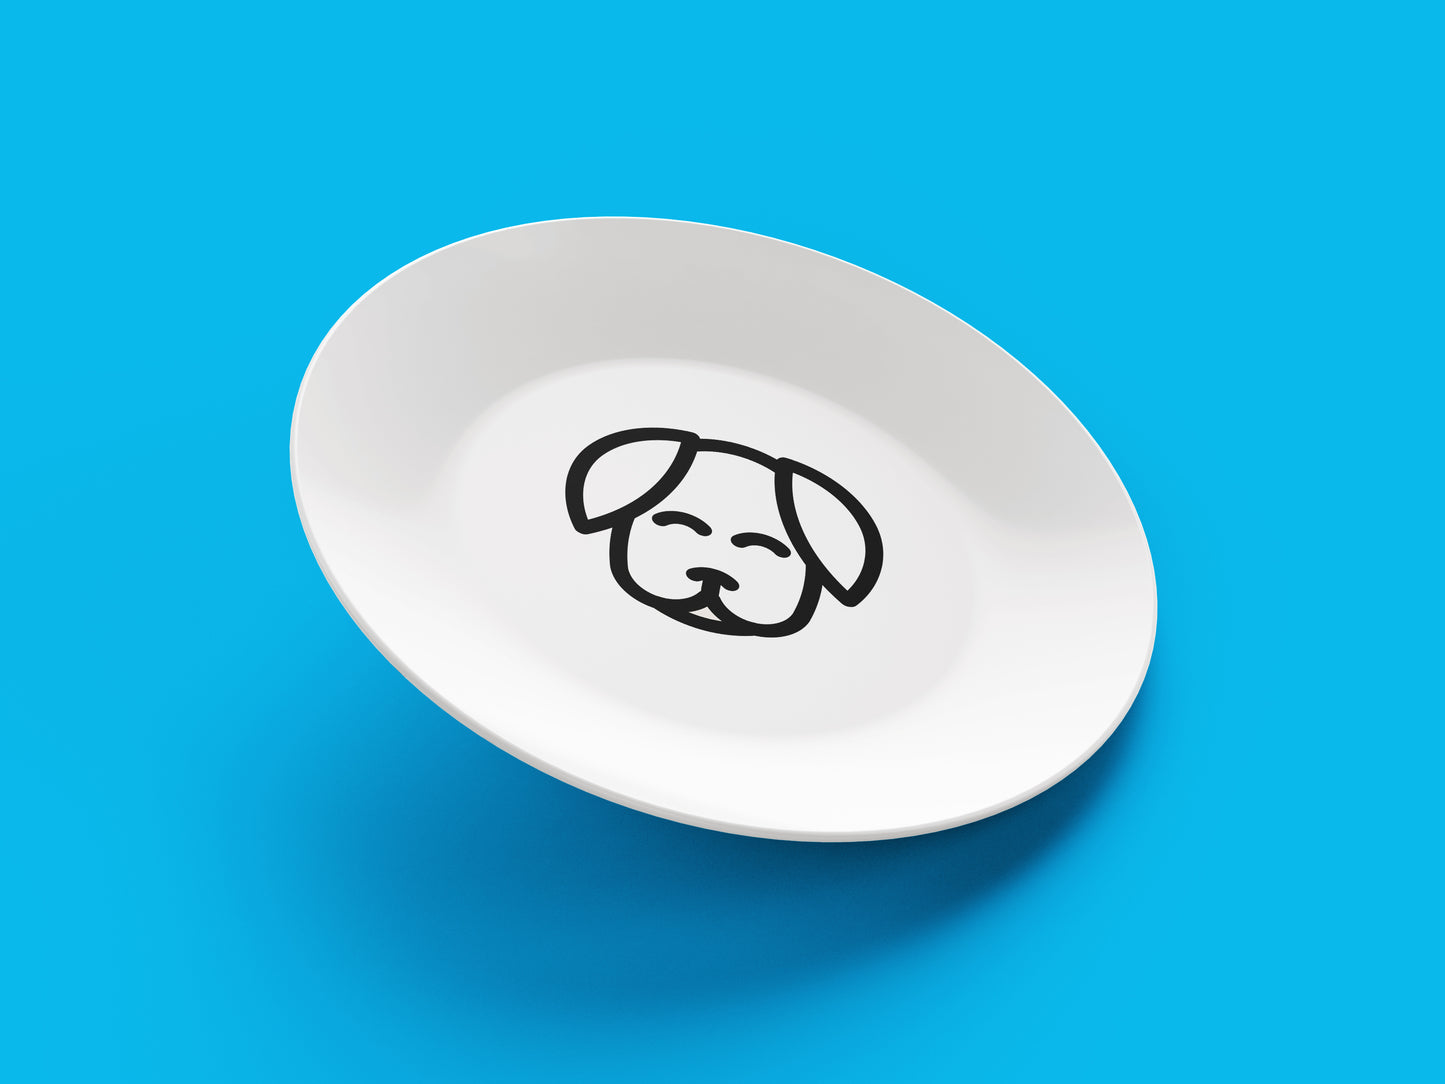 El Yapımı Köpek Yüzlü Yemek Tabağı, Porselen Sevimli Köpek Yemek Tabağı (1 adet)